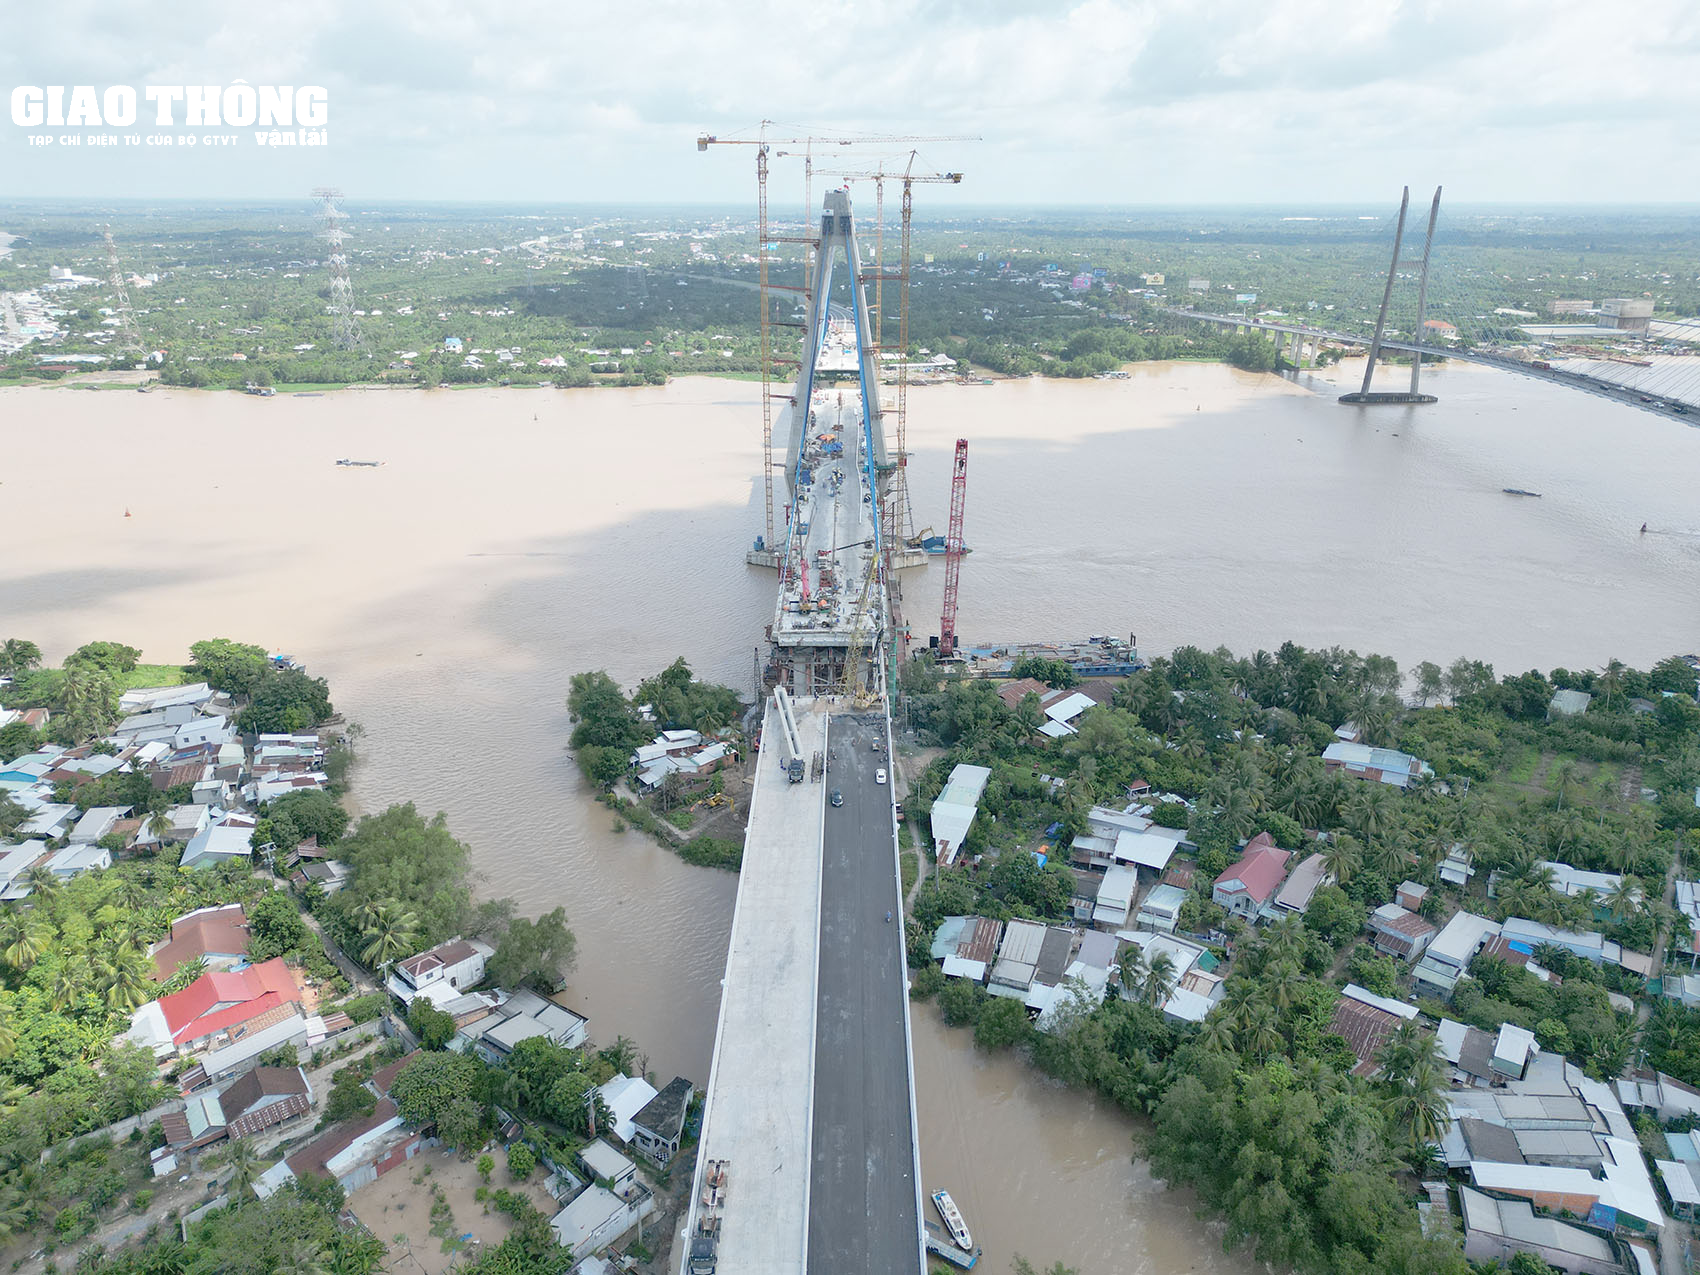 Cận cảnh công tác lao lắp dầm đầu tiên cầu Mỹ Thuận 2 nối bờ Vĩnh Long - Ảnh 7.